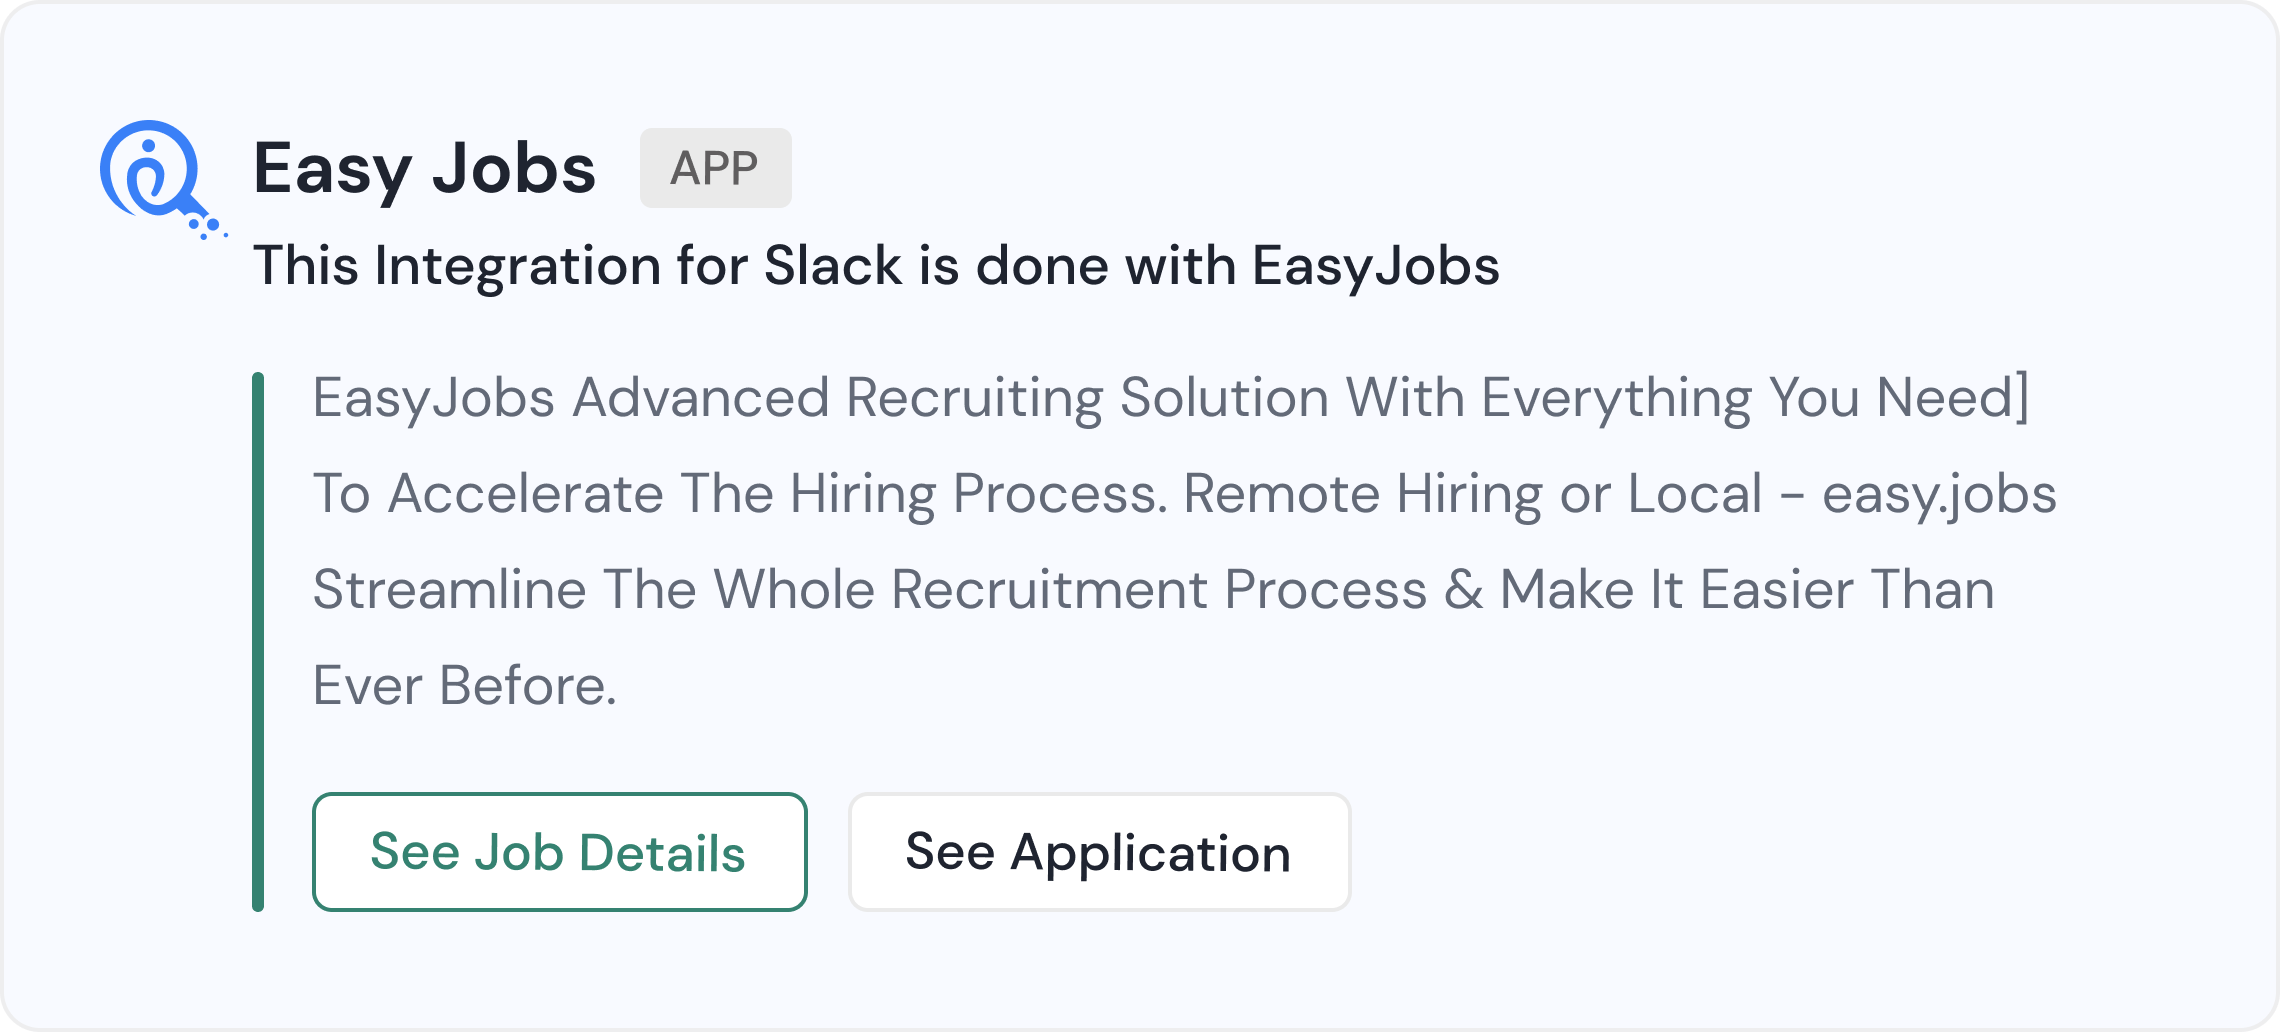 easy.jobs App For Slack